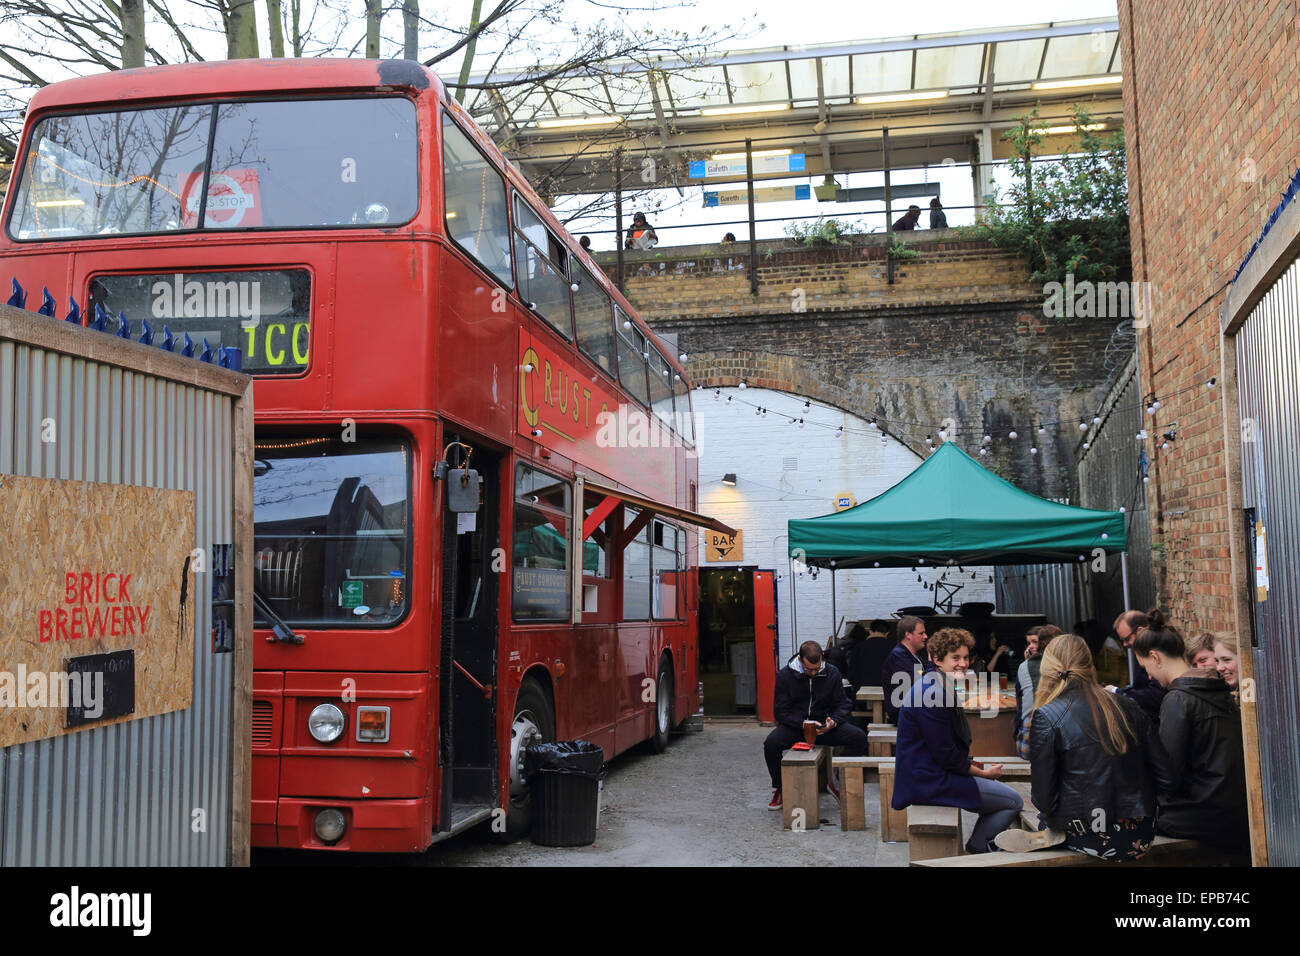 Le bus d'orchestre excentrique converti en croûte de pop up restaurant, dans le quartier branché de Peckham Rye, en SE de Londres, Angleterre, Royaume-Uni Banque D'Images